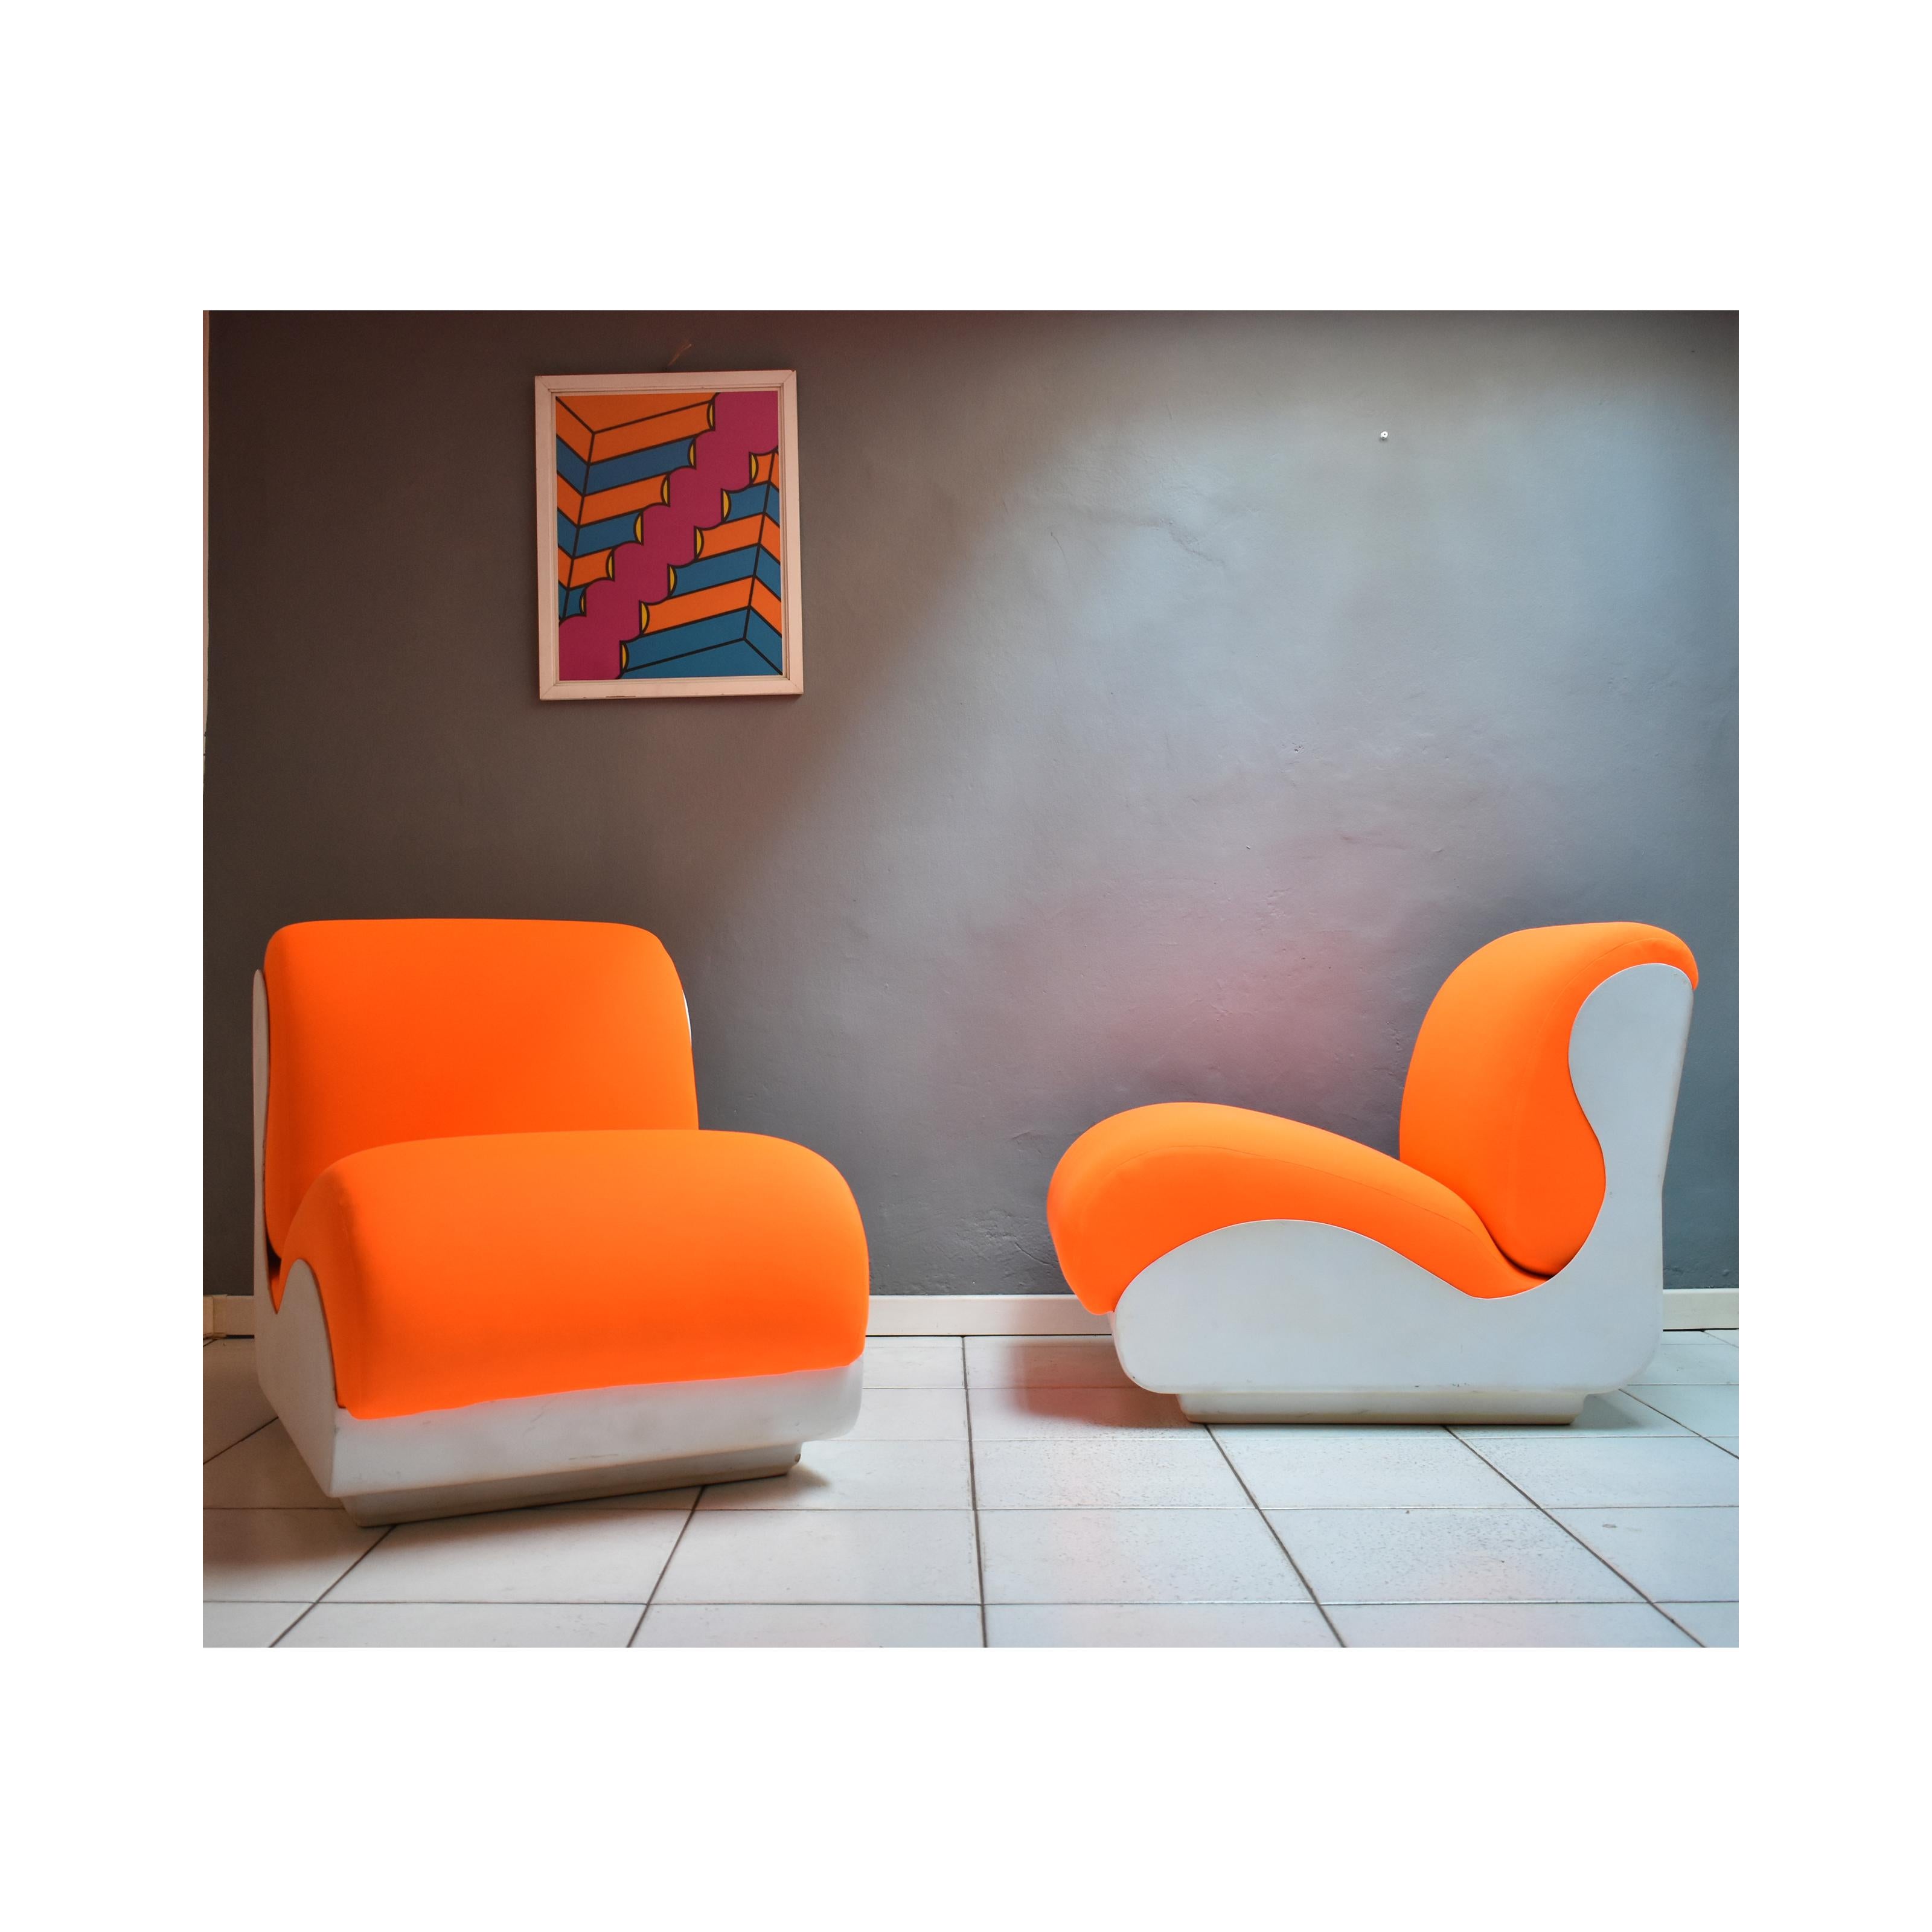 Satz von zwei Sesseln aus den siebziger Jahren, italienische Herstellung.
Die Sessel haben einen weißen  aus Fiberglas mit einem leuchtend orangefarbenen Stoffsitz.
Sie haben eine besondere, fast futuristische Struktur.
Der Sitz ist vollständig von